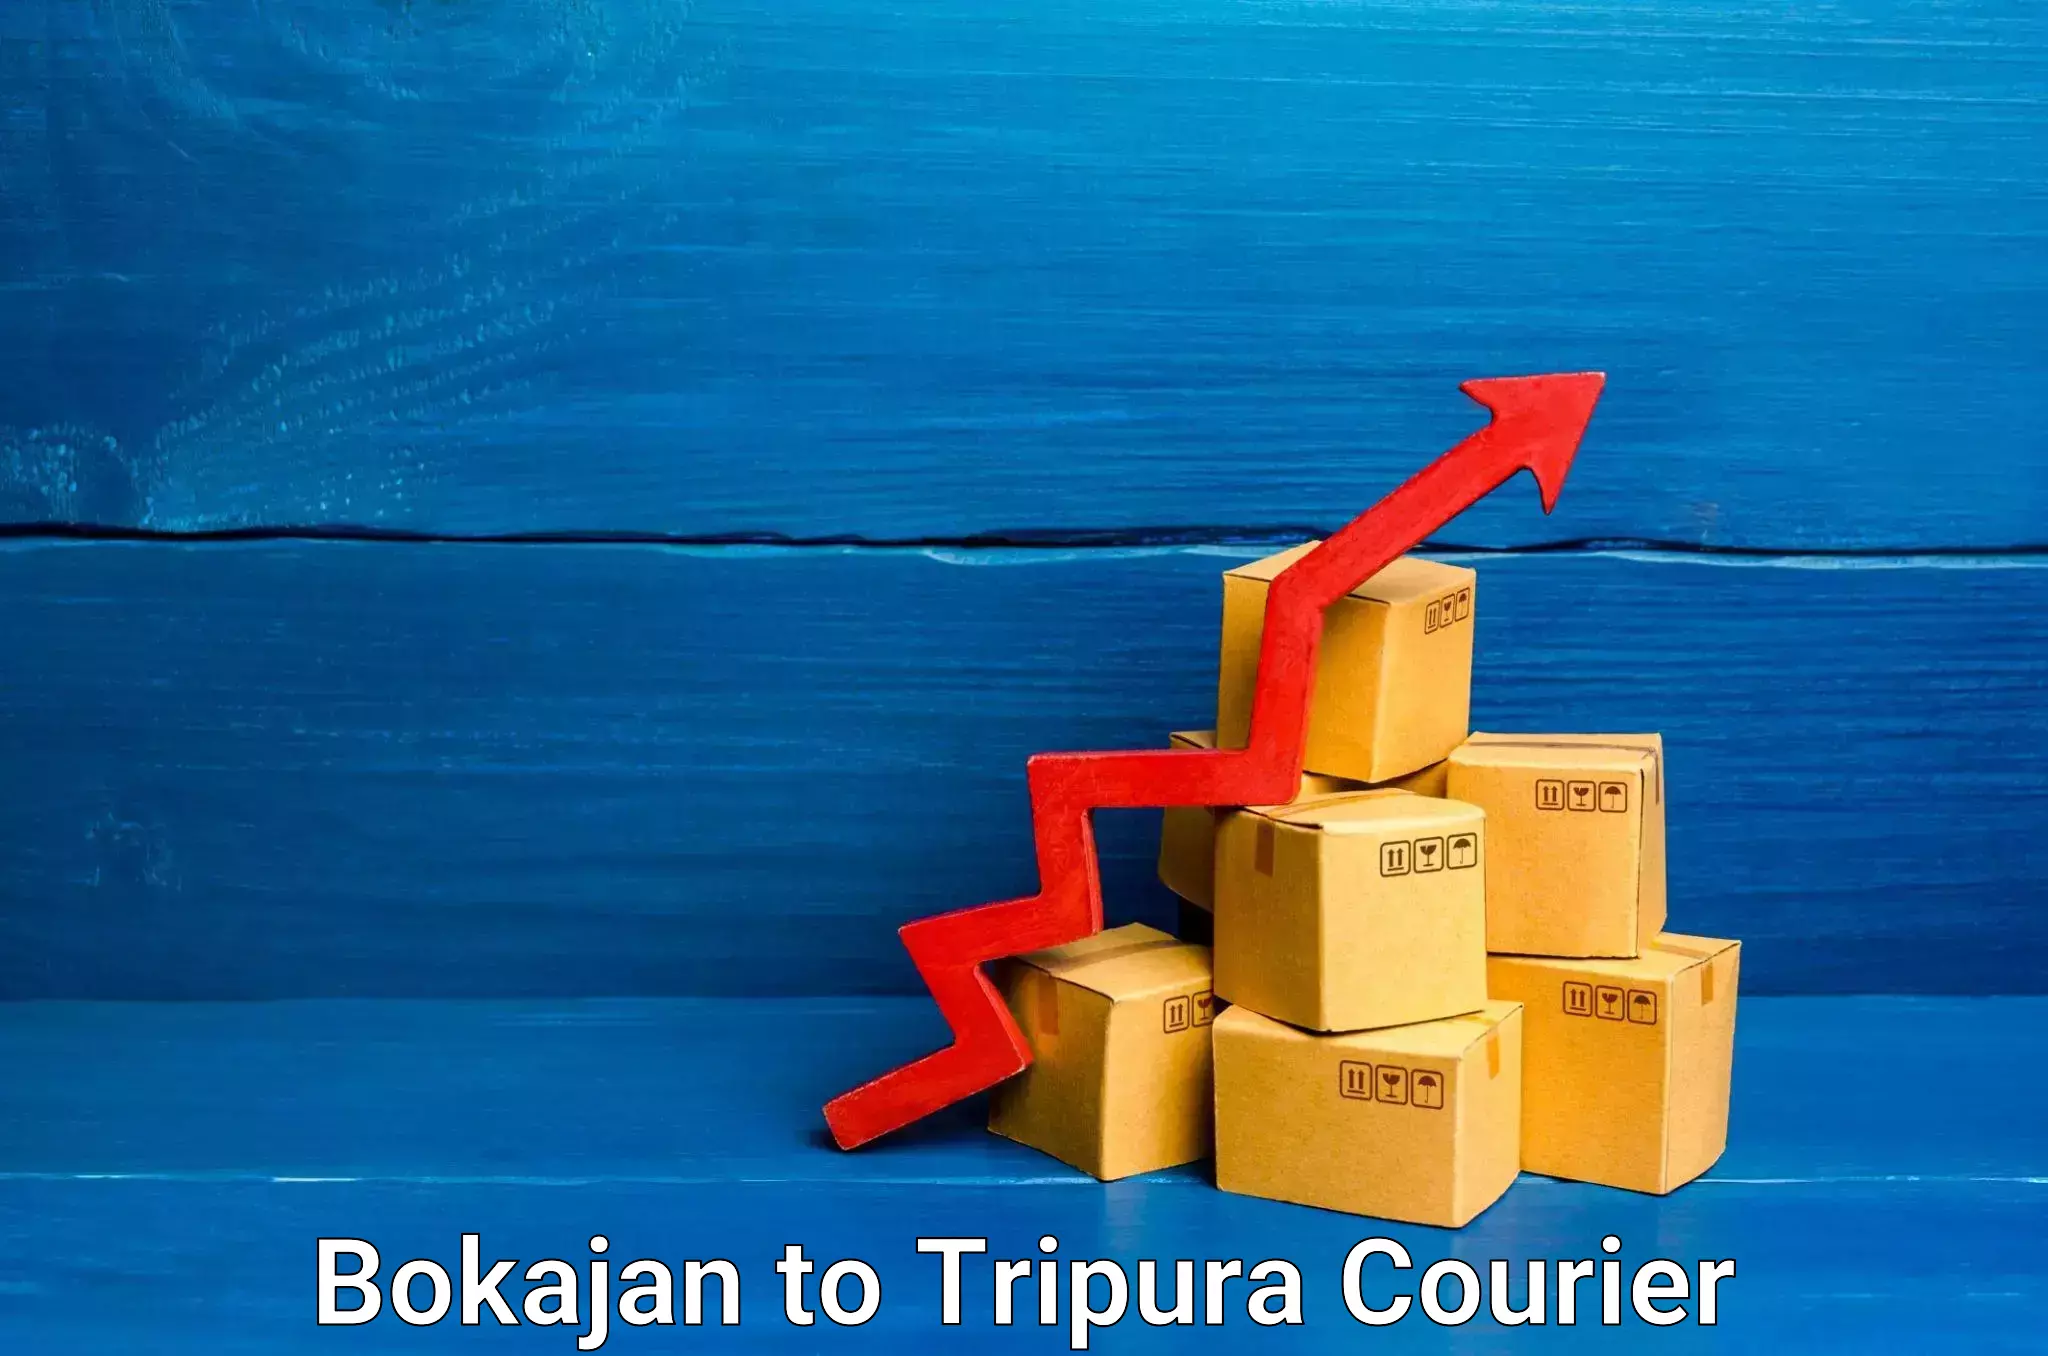 Express delivery capabilities Bokajan to Tripura